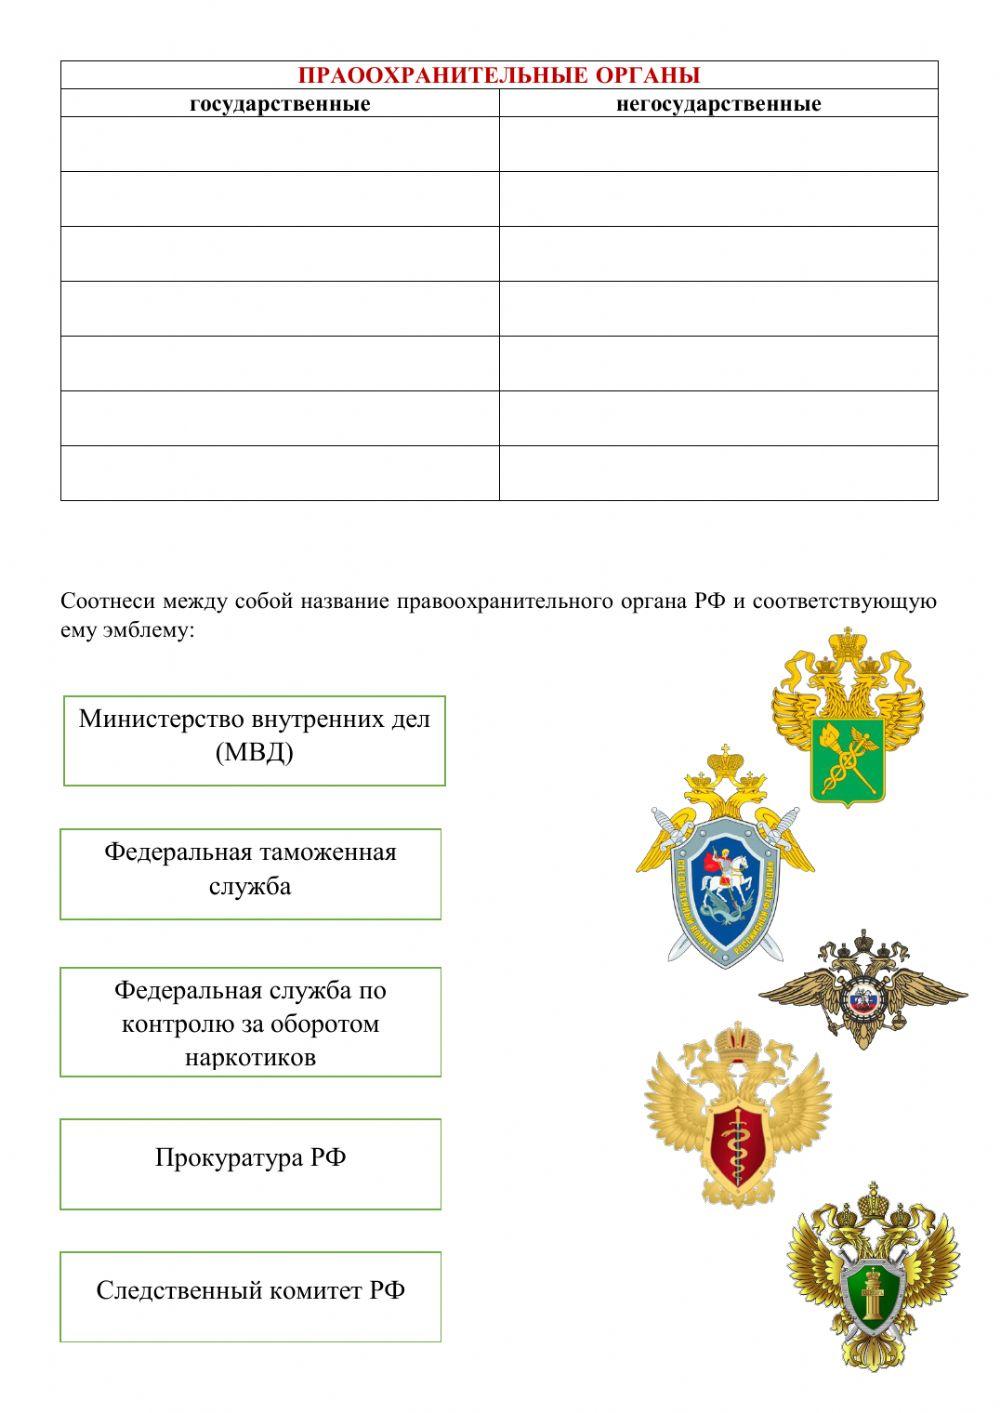 Правоохранительные органы РФ